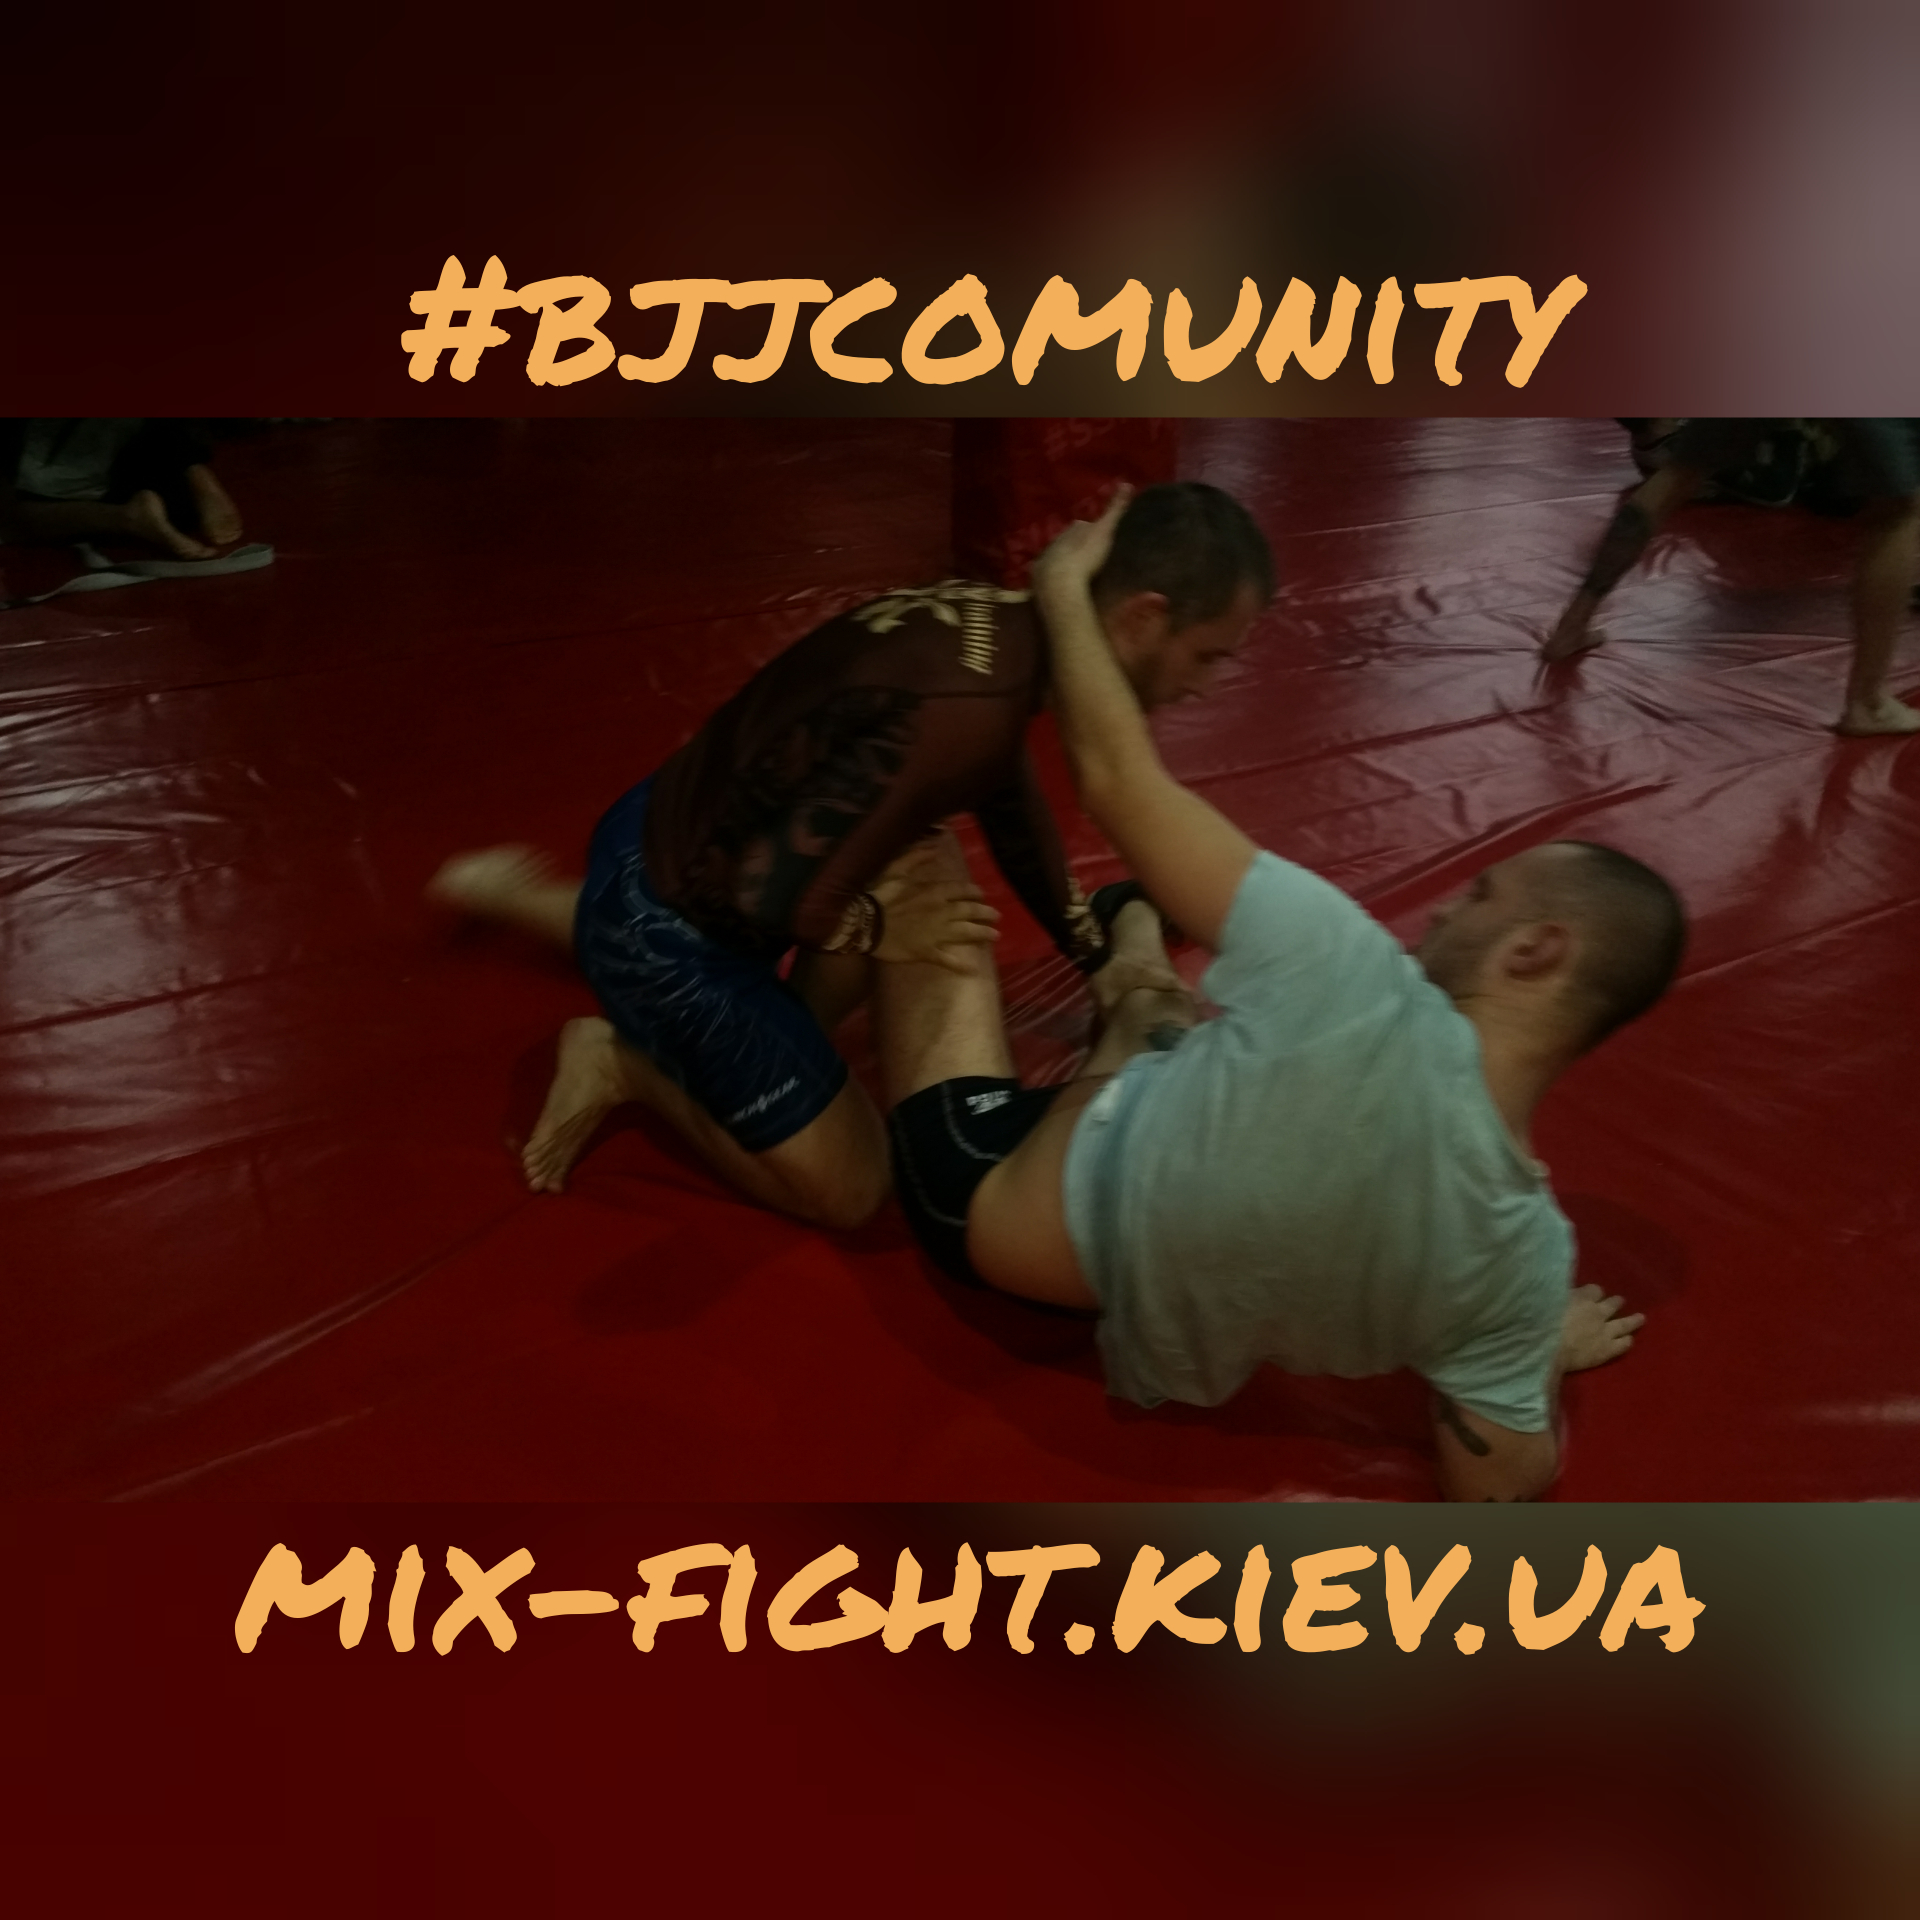 MMA_Kiev_Boxing_108 mix-fight.kiev.ua.jpg